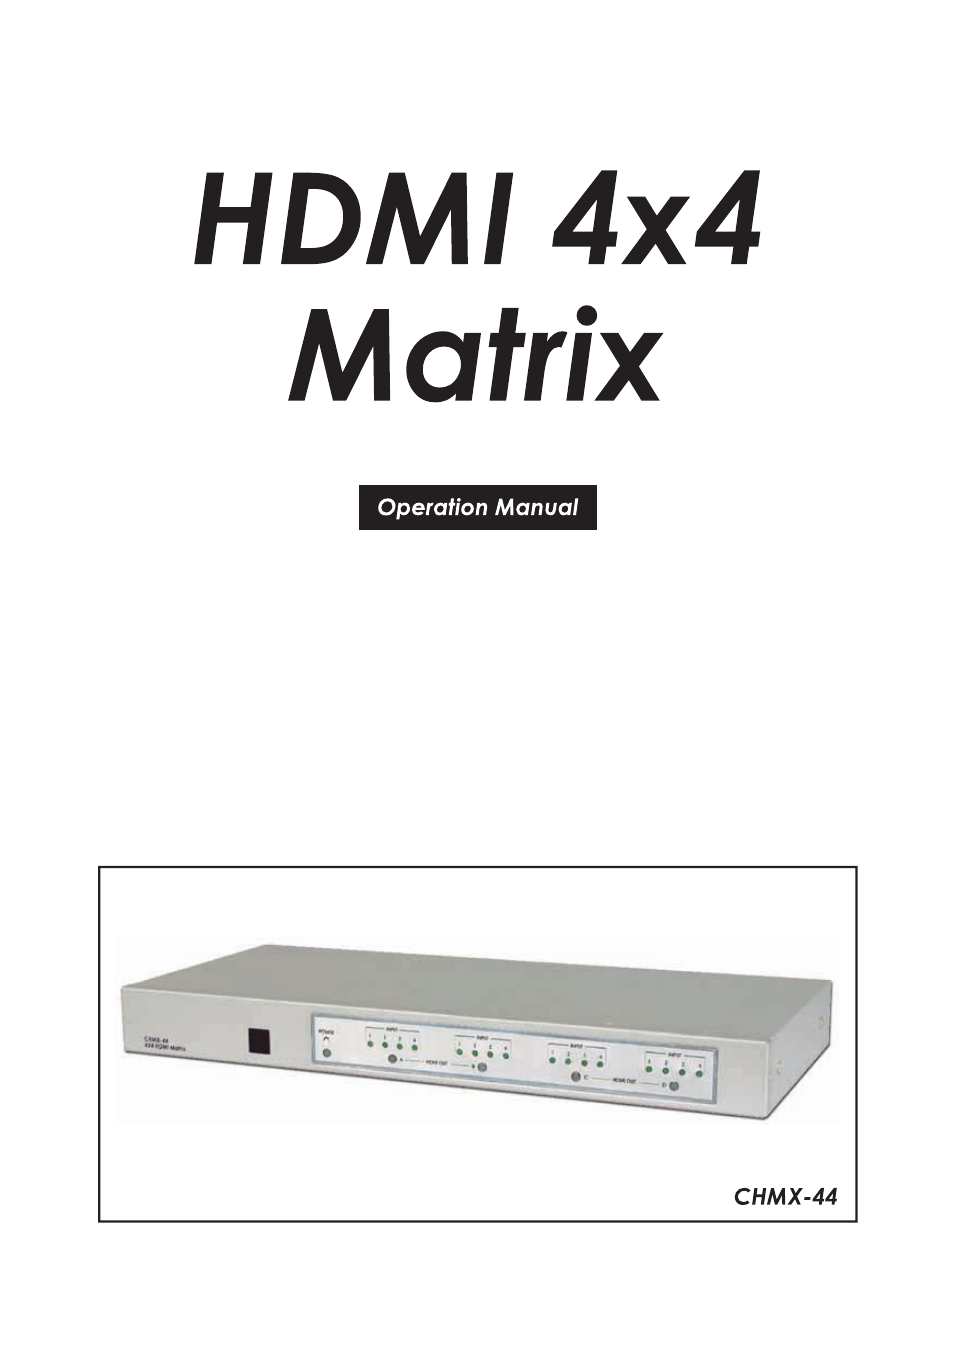 SM-4X4-HDMI-LC